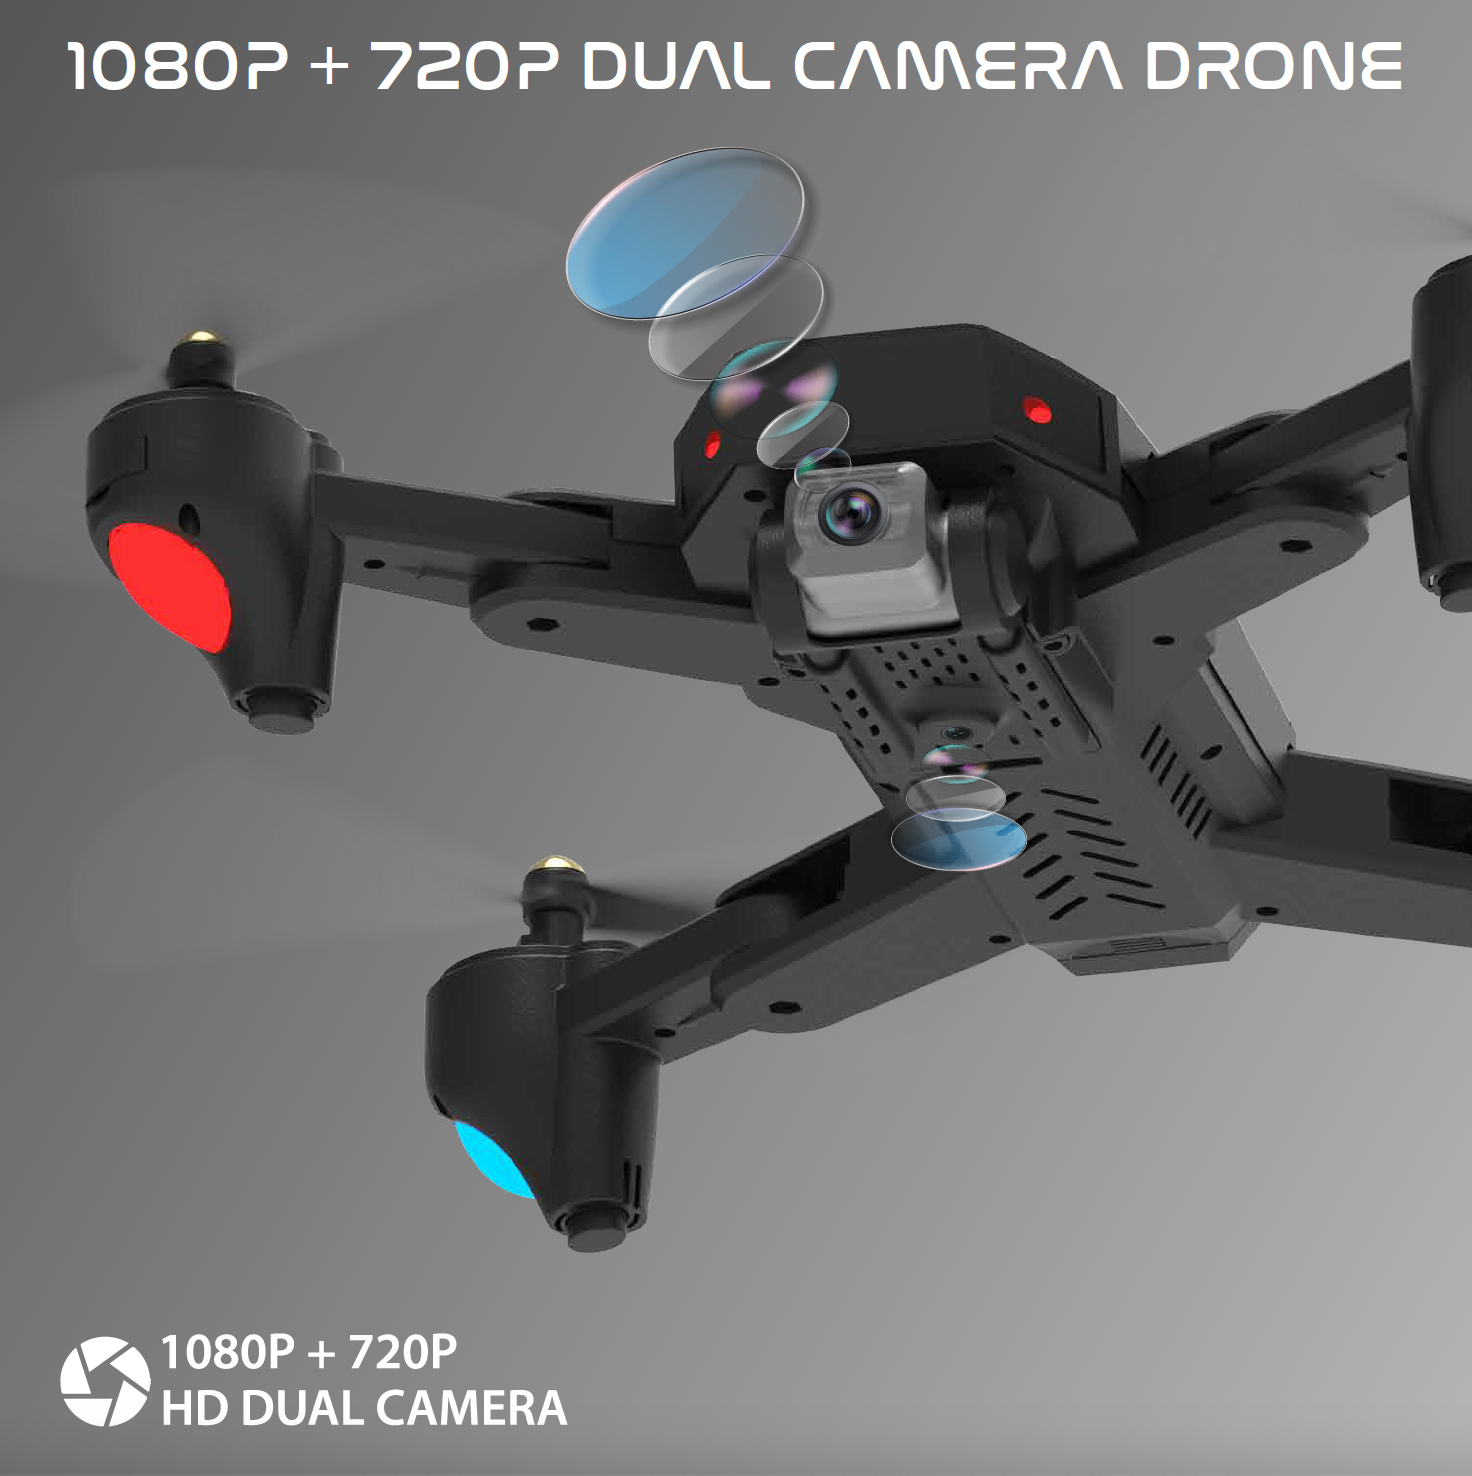 electrobotic dual camera drone 1080p + 720p nabhyaan drone